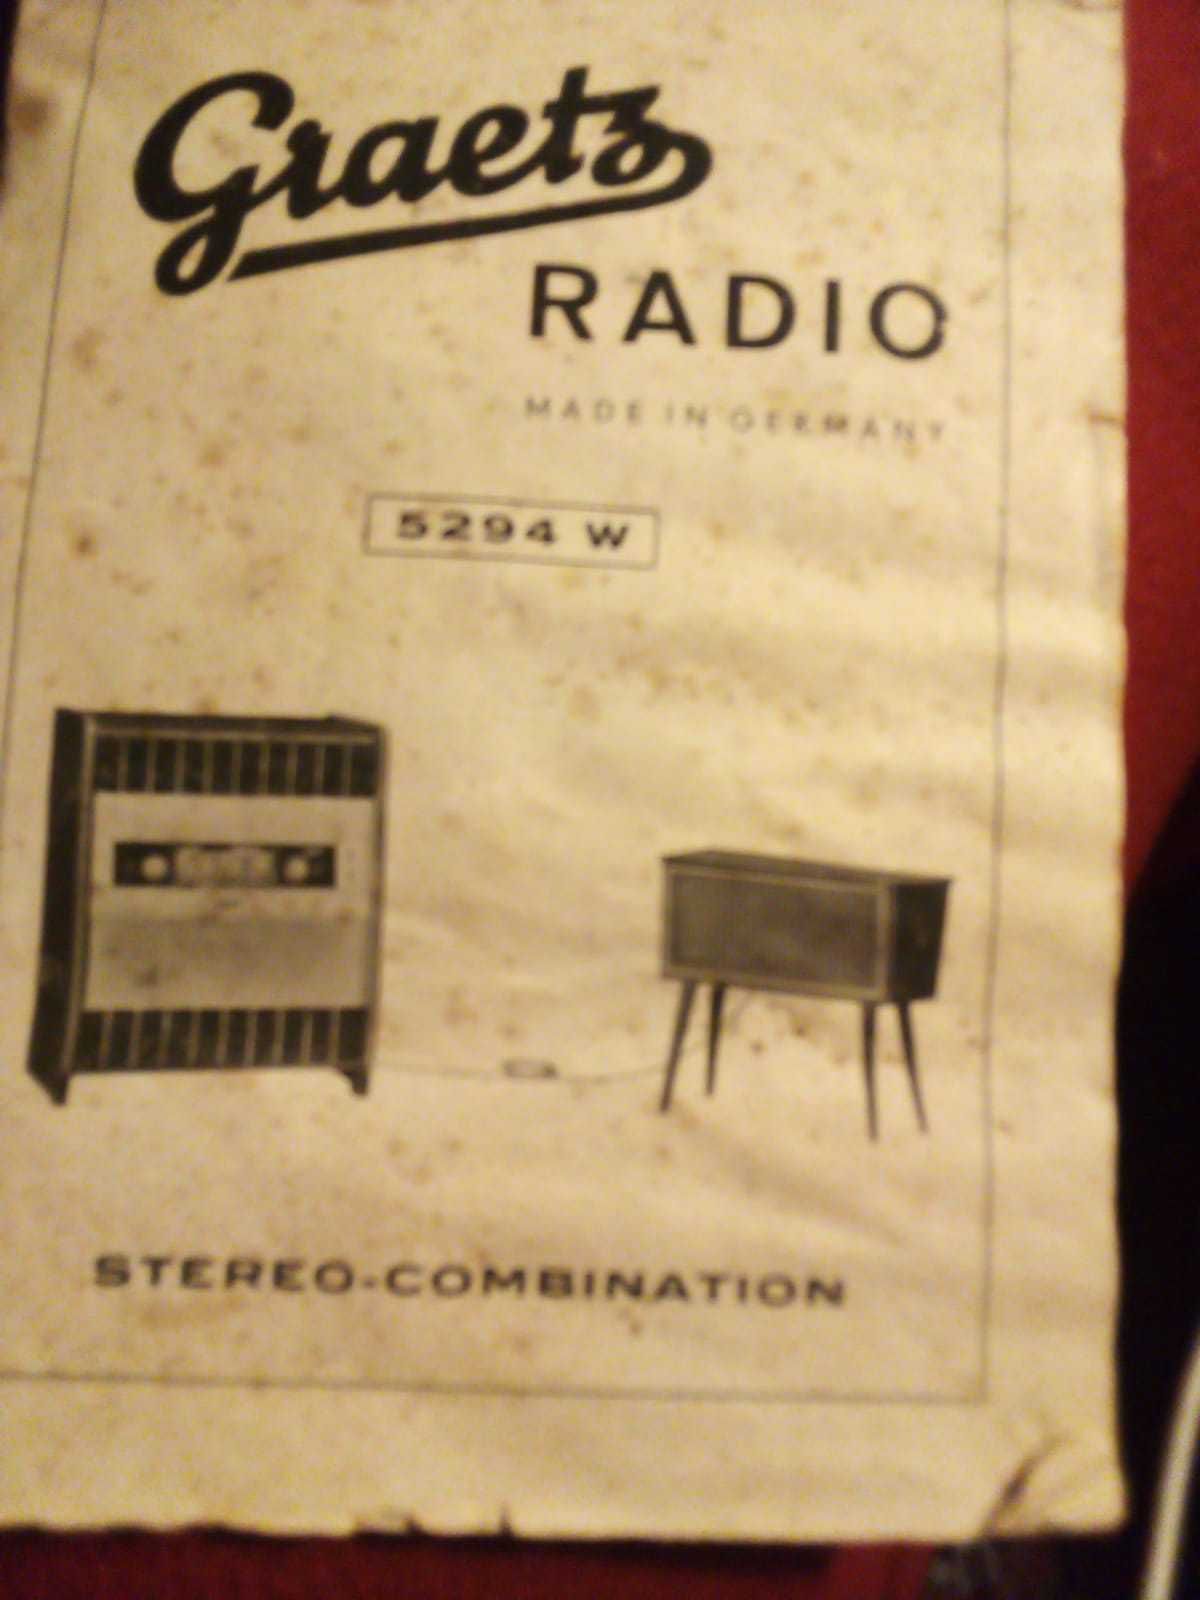 Rádio Gira discos antigo Graetz